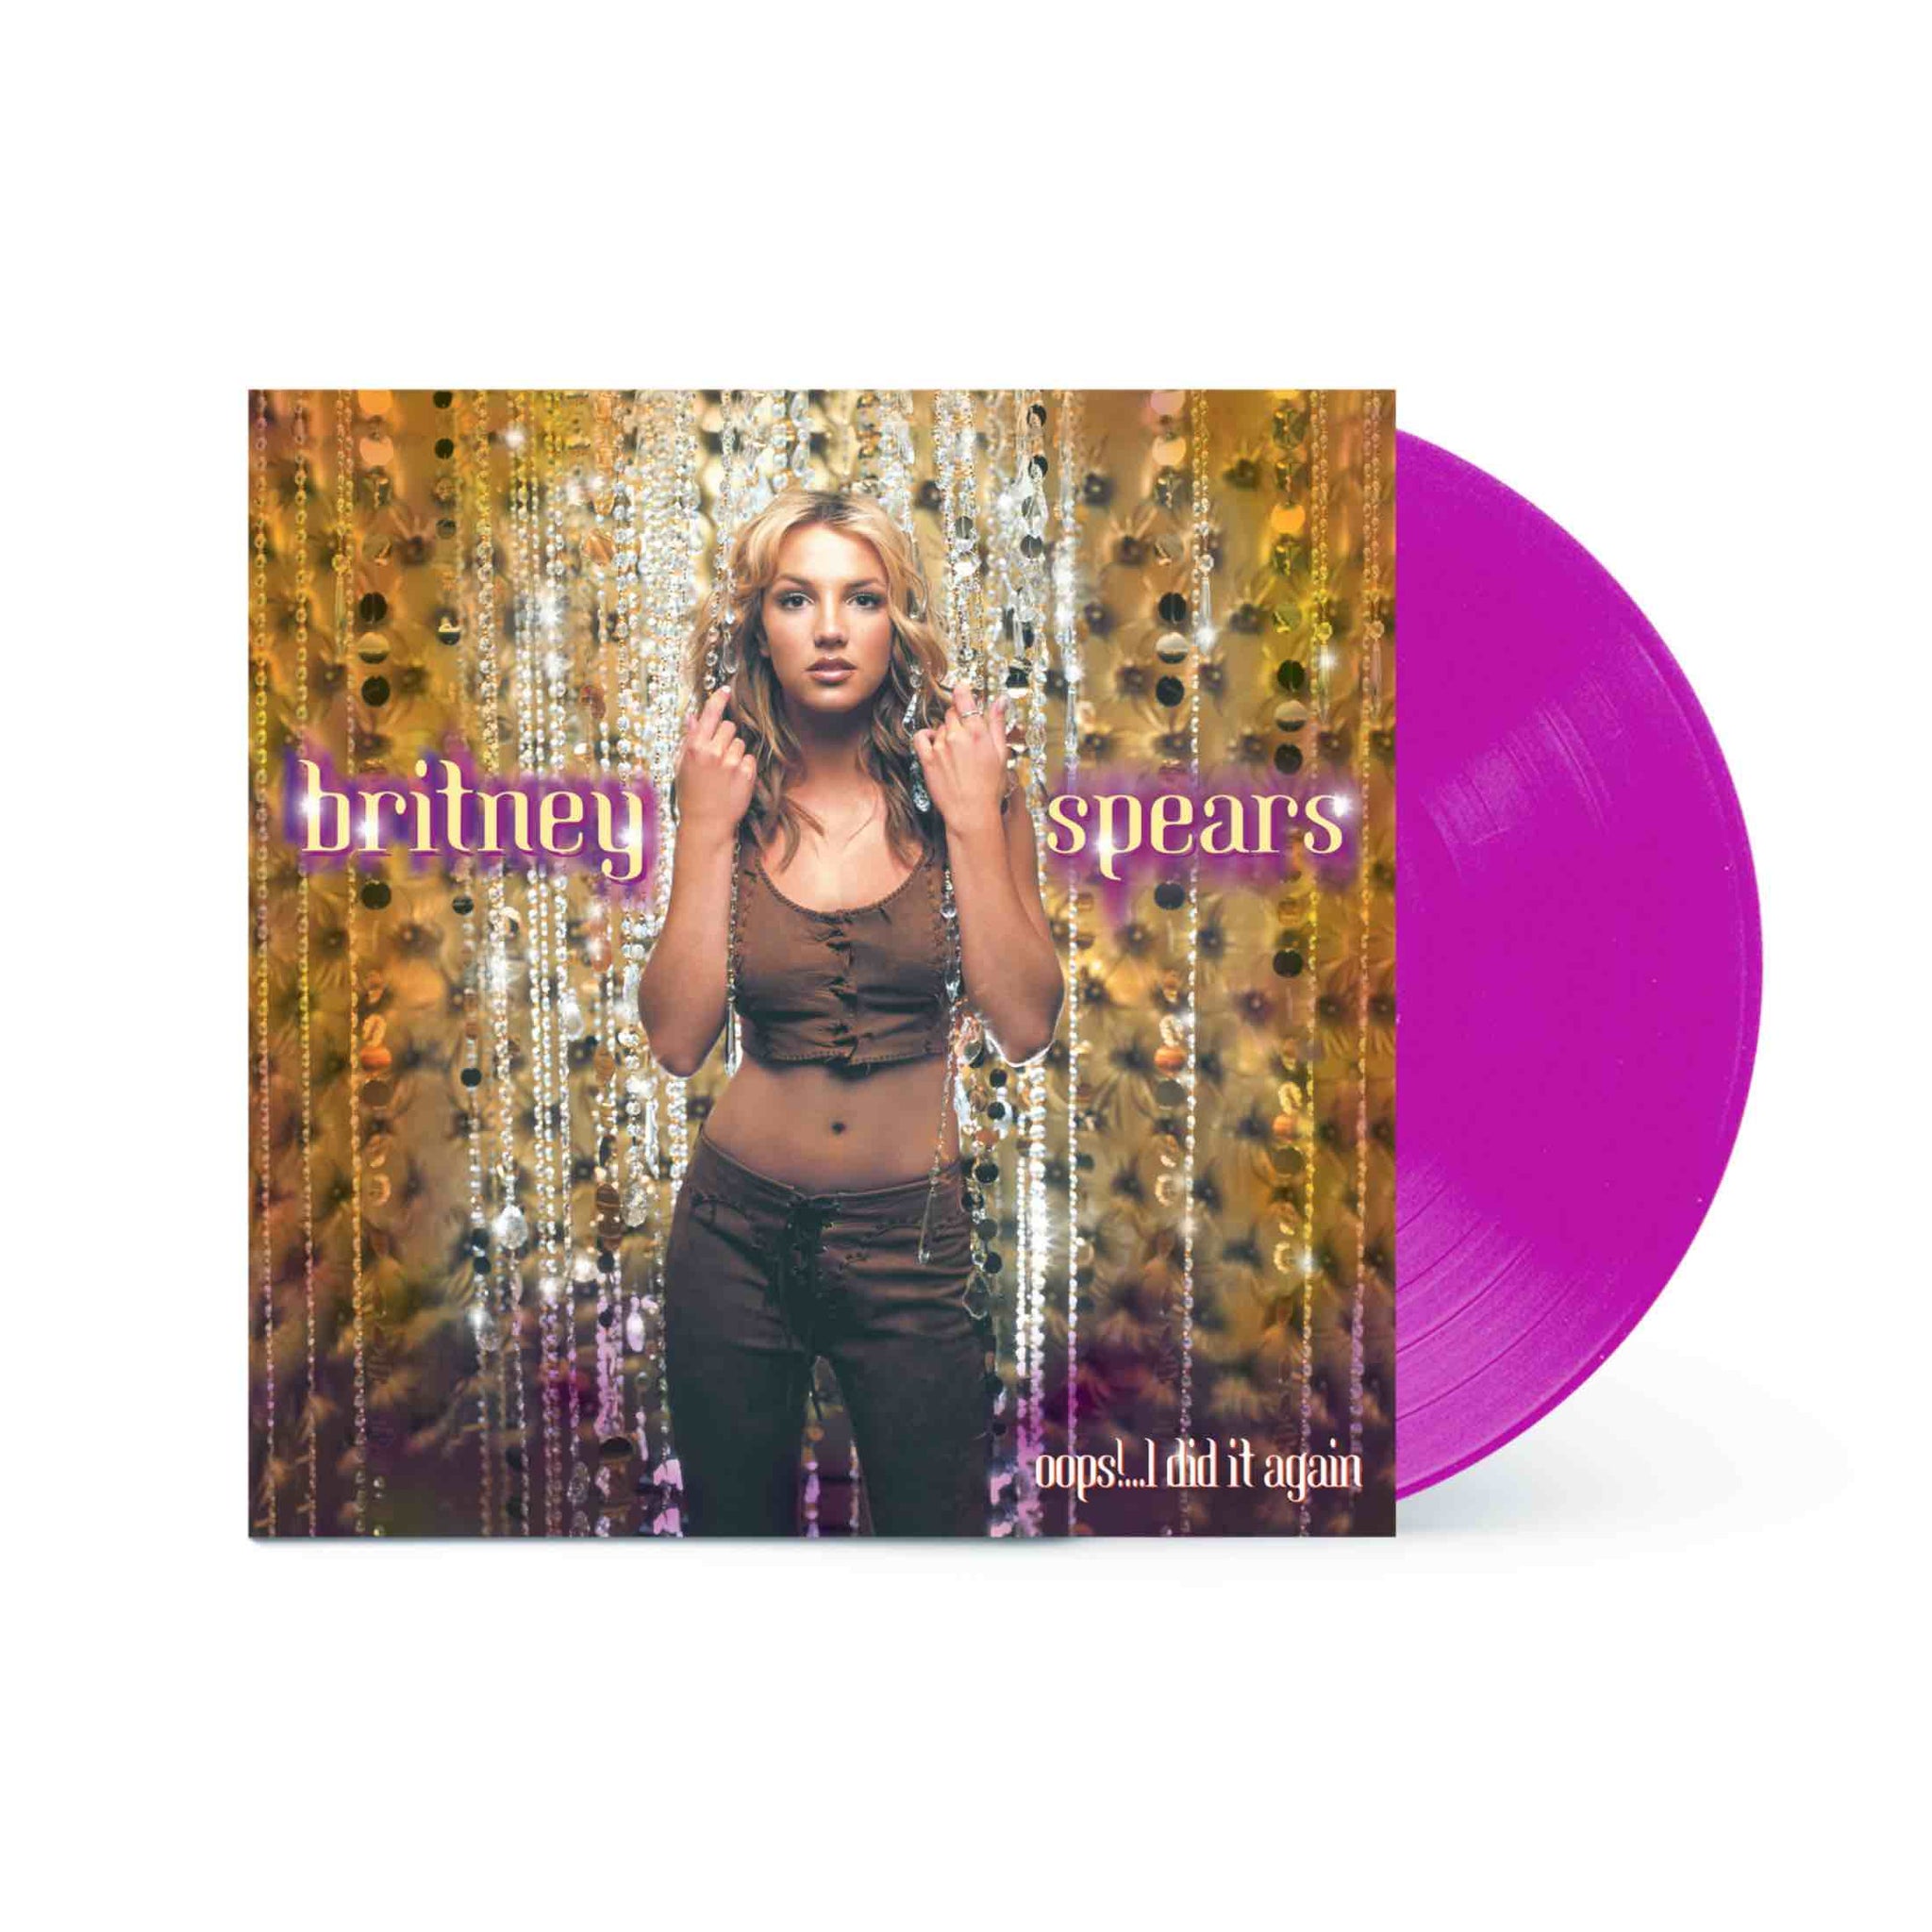 Britney Spears - Oops!...I Did It Again LP (Purple Vinyl)